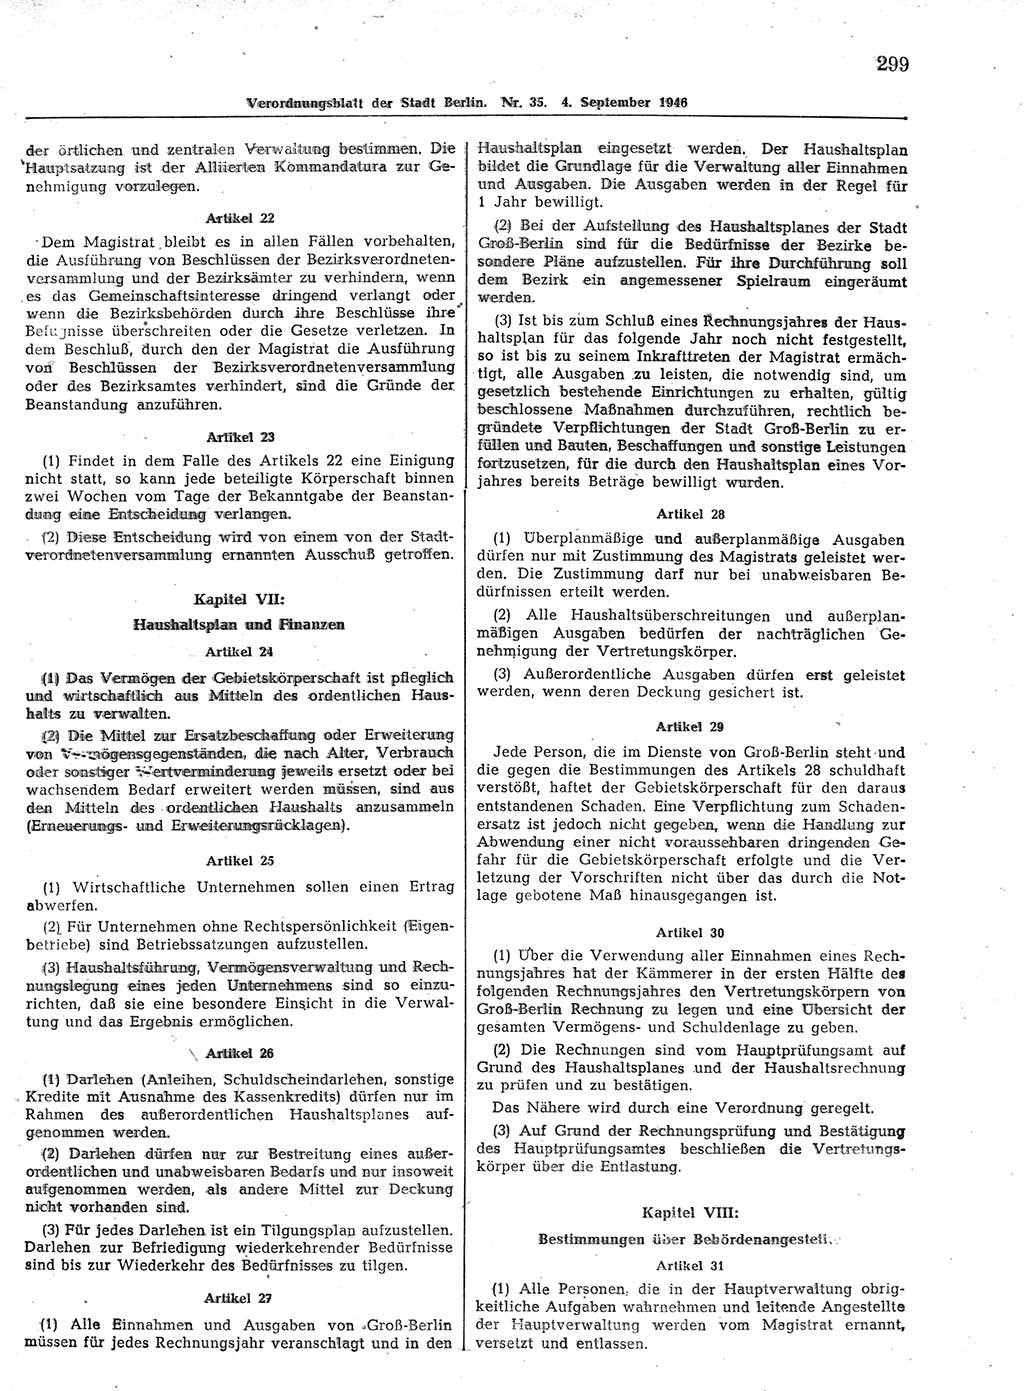 Verordnungsblatt (VOBl.) der Stadt Berlin, für Groß-Berlin 1946, Seite 299 (VOBl. Bln. 1946, S. 299)